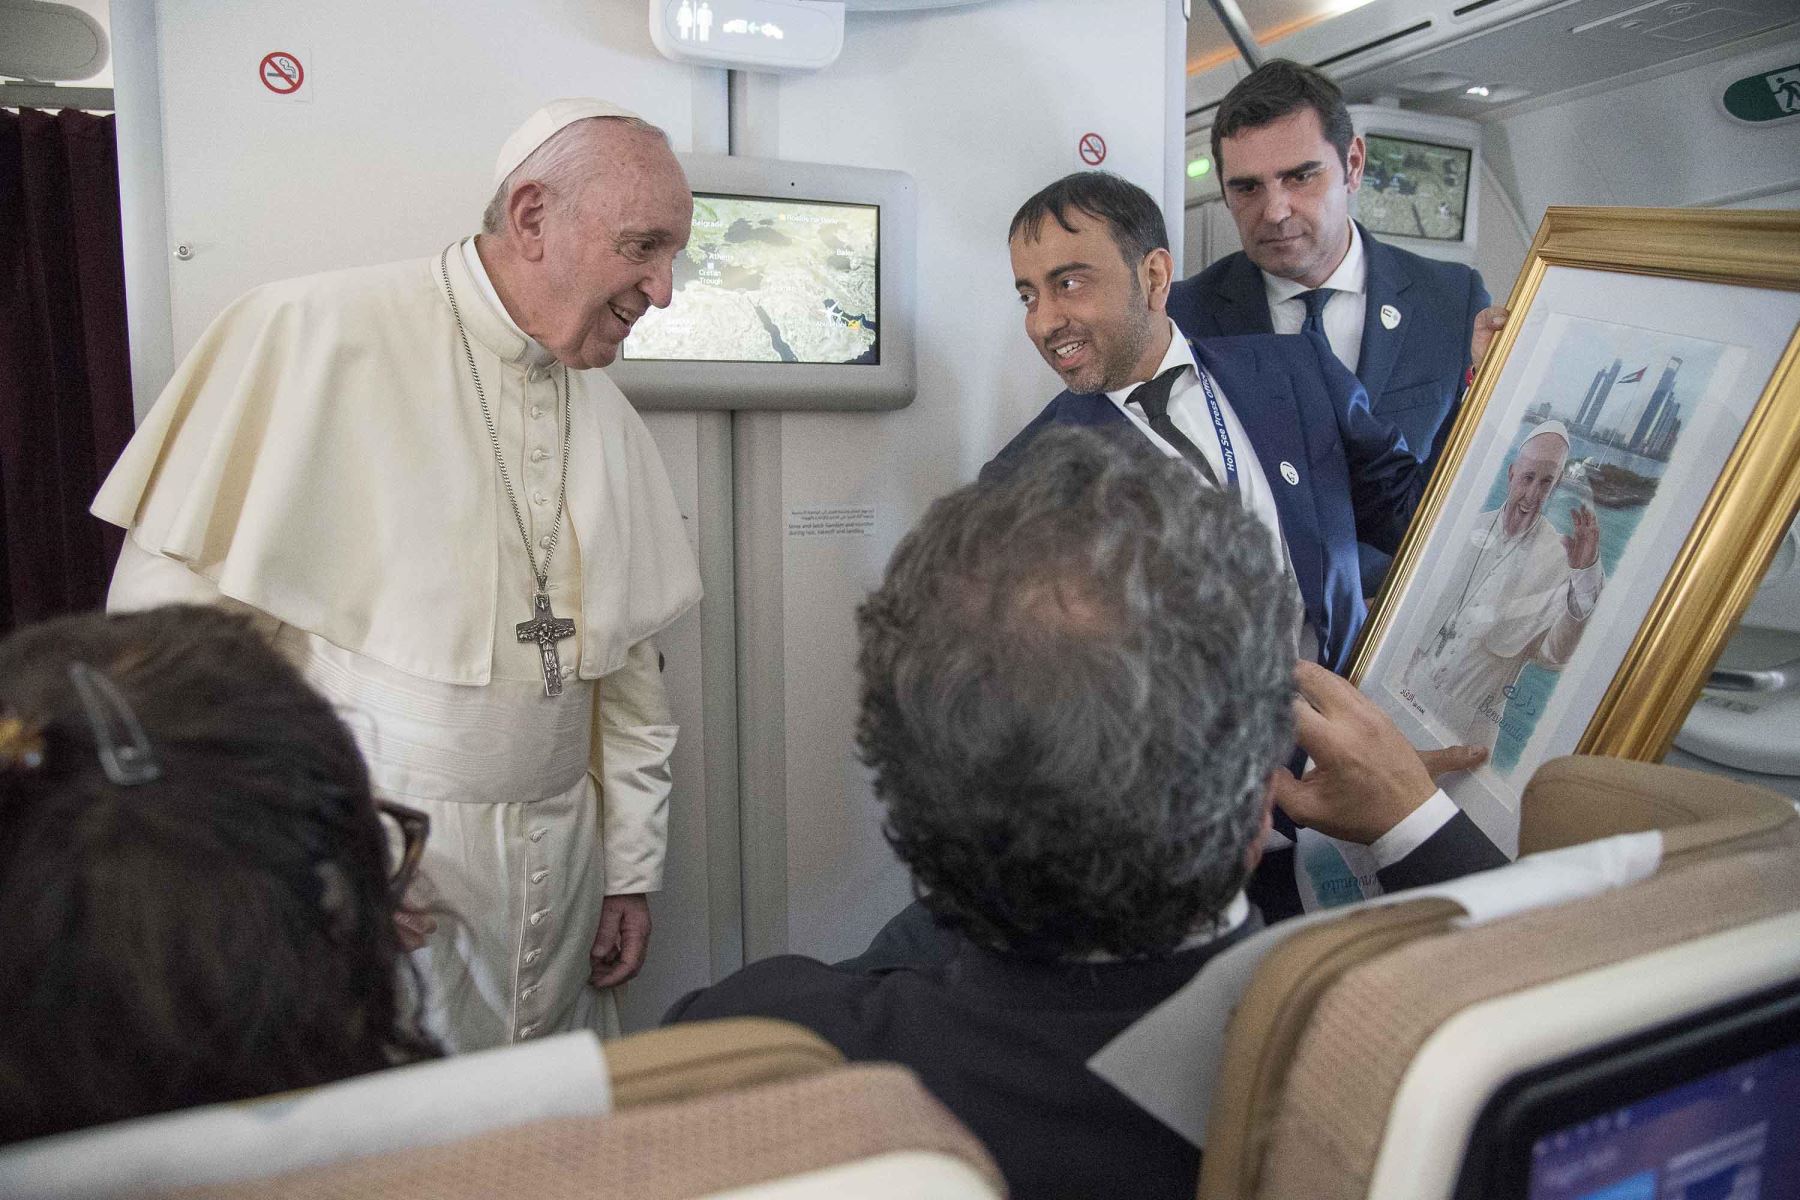 El Papa Francisco recibe un regalo en el avión luego de su visita a Abu Dhabi Foto: AFP